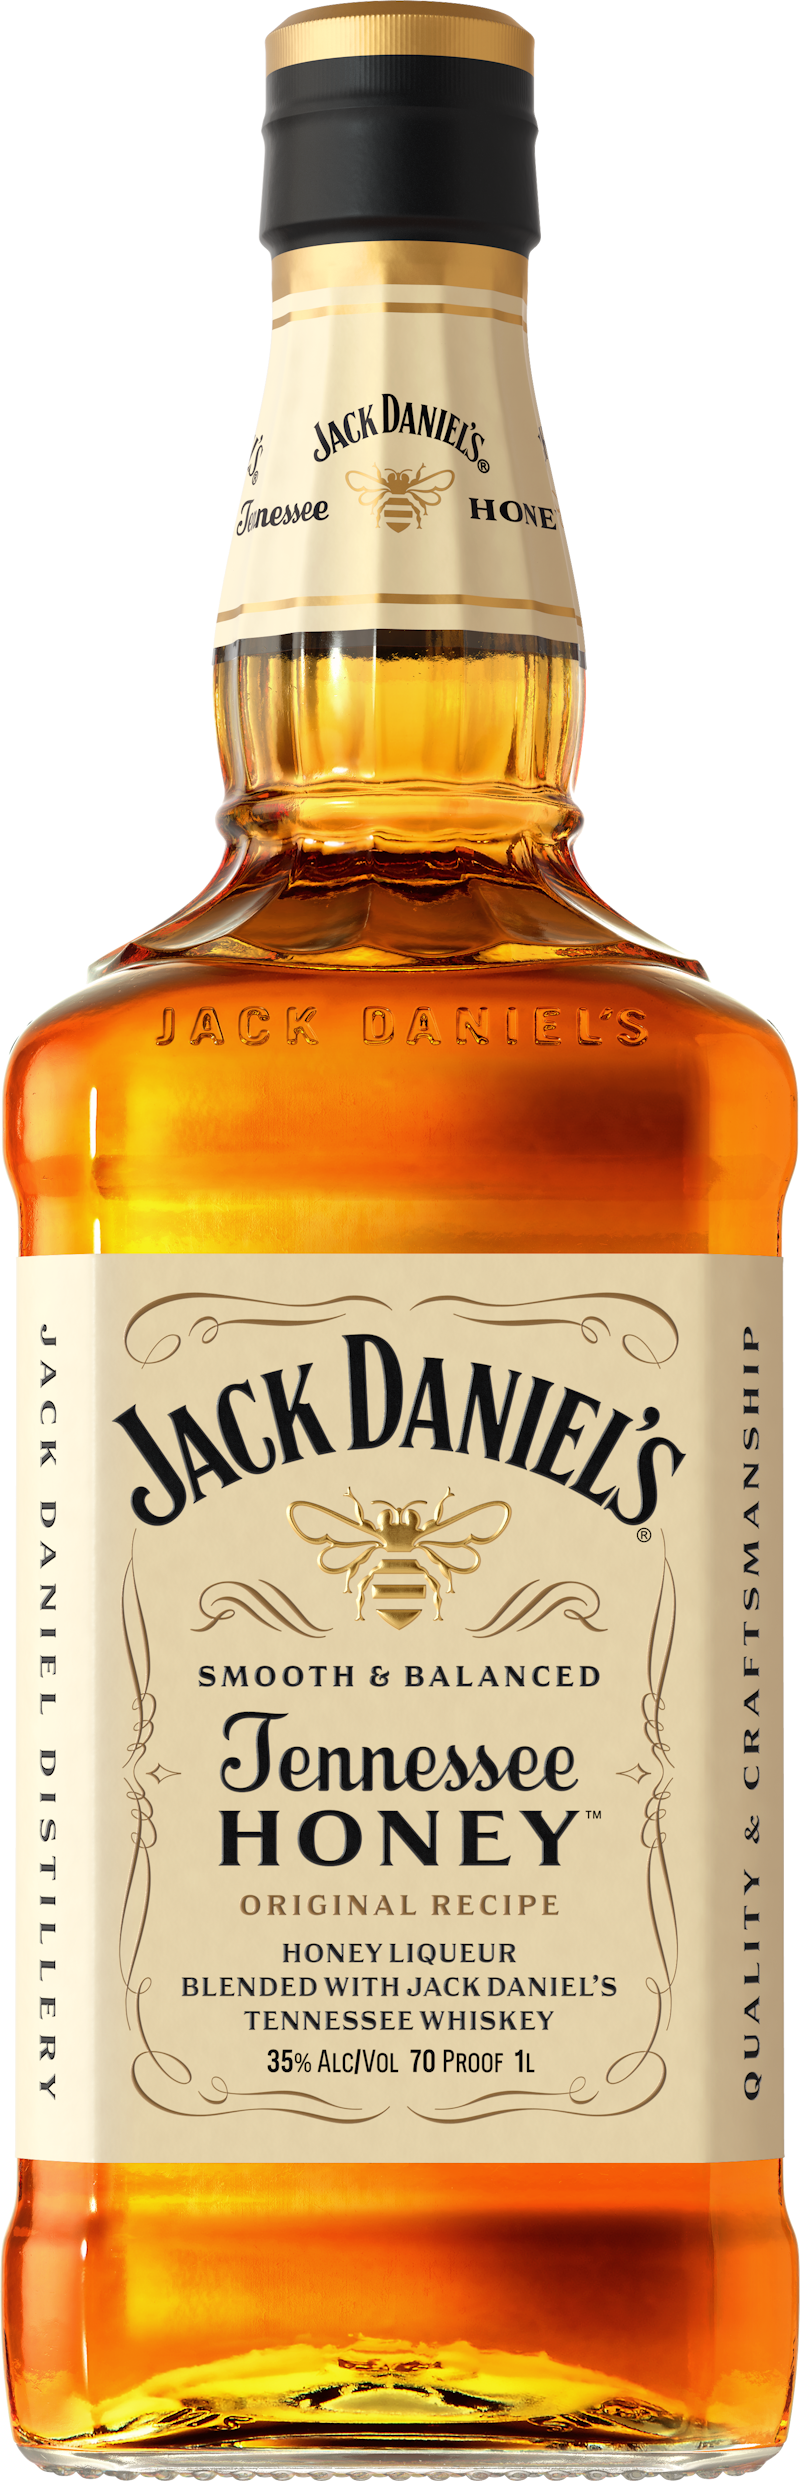 https://www.bottlebuys.com/images/sites/bottlebuys/labels/jack-daniel-s-tennessee-whiskey-honey-liqueur-lit_1.jpg